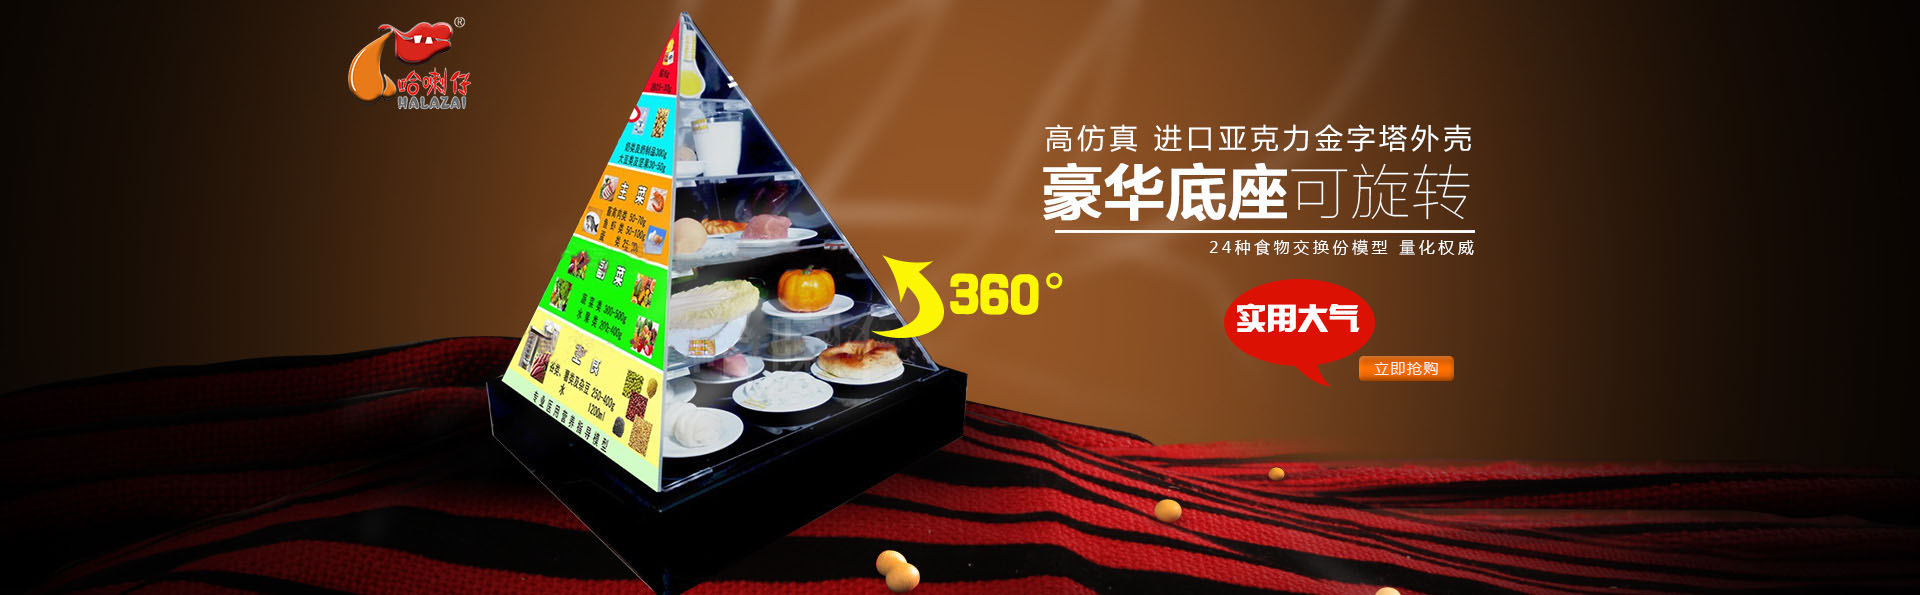 膳食宝塔模型公司带您了解中国餐饮产业的发展